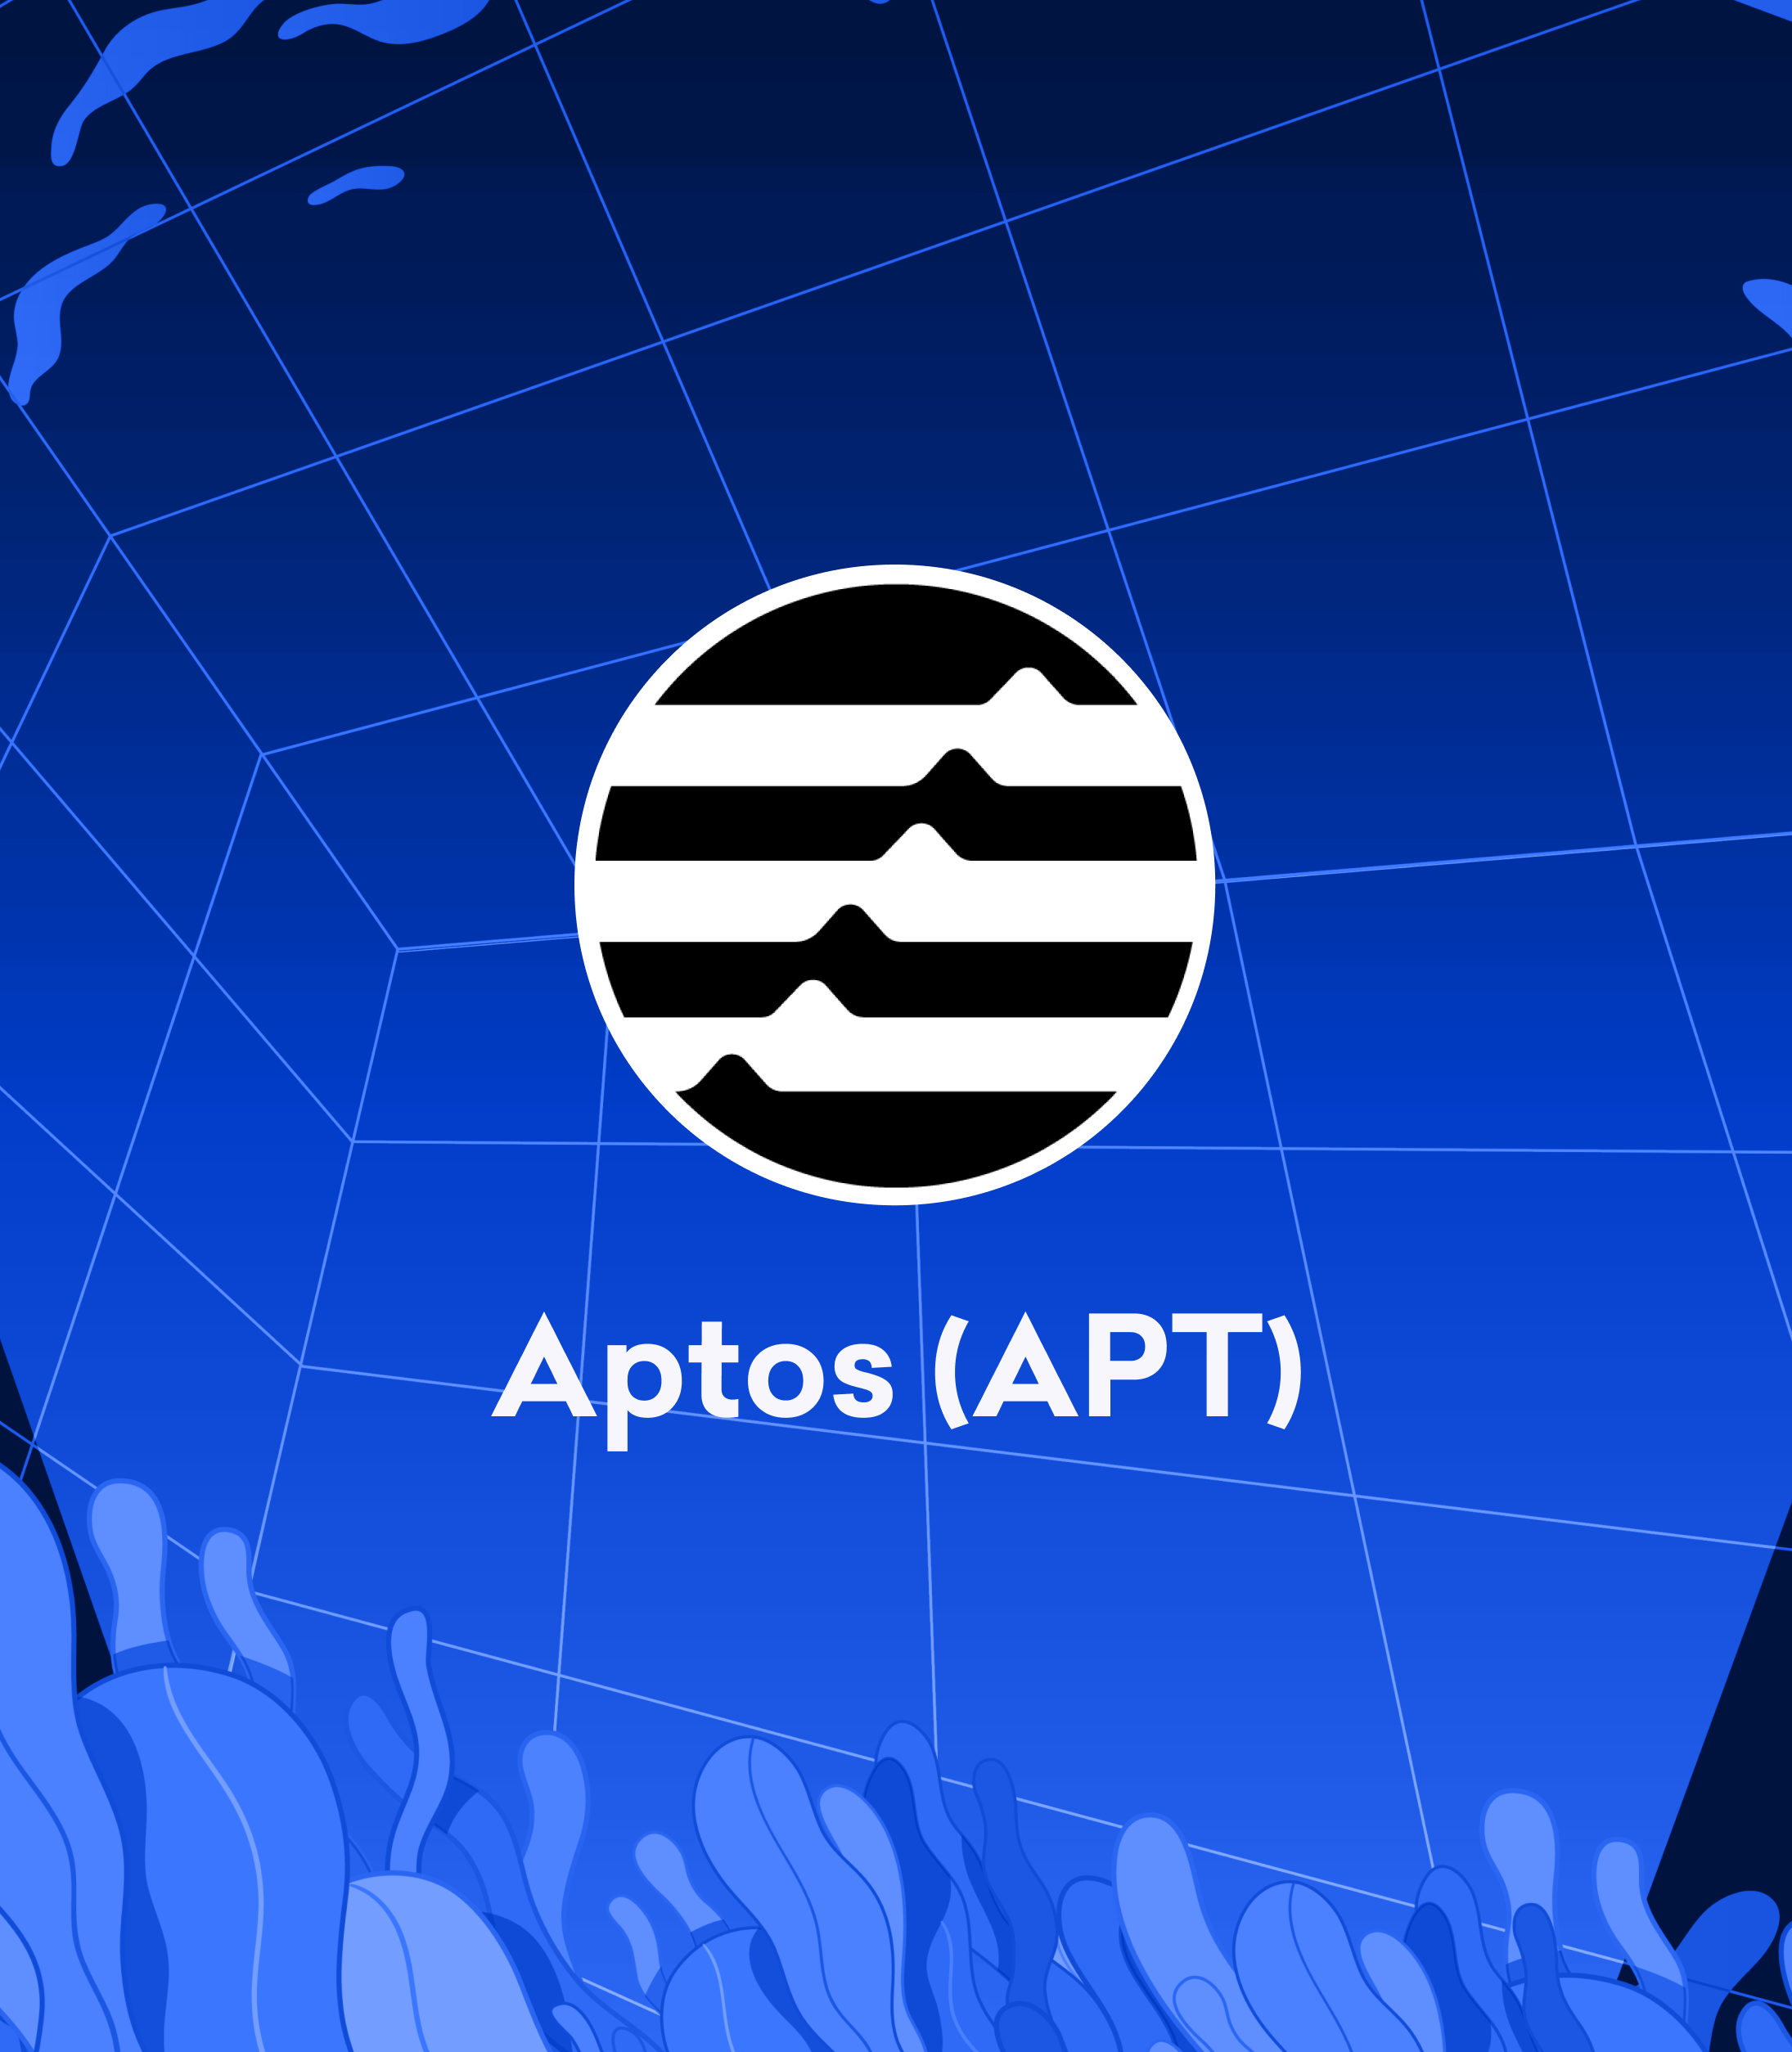 Trading for Aptos (APT) starts now!